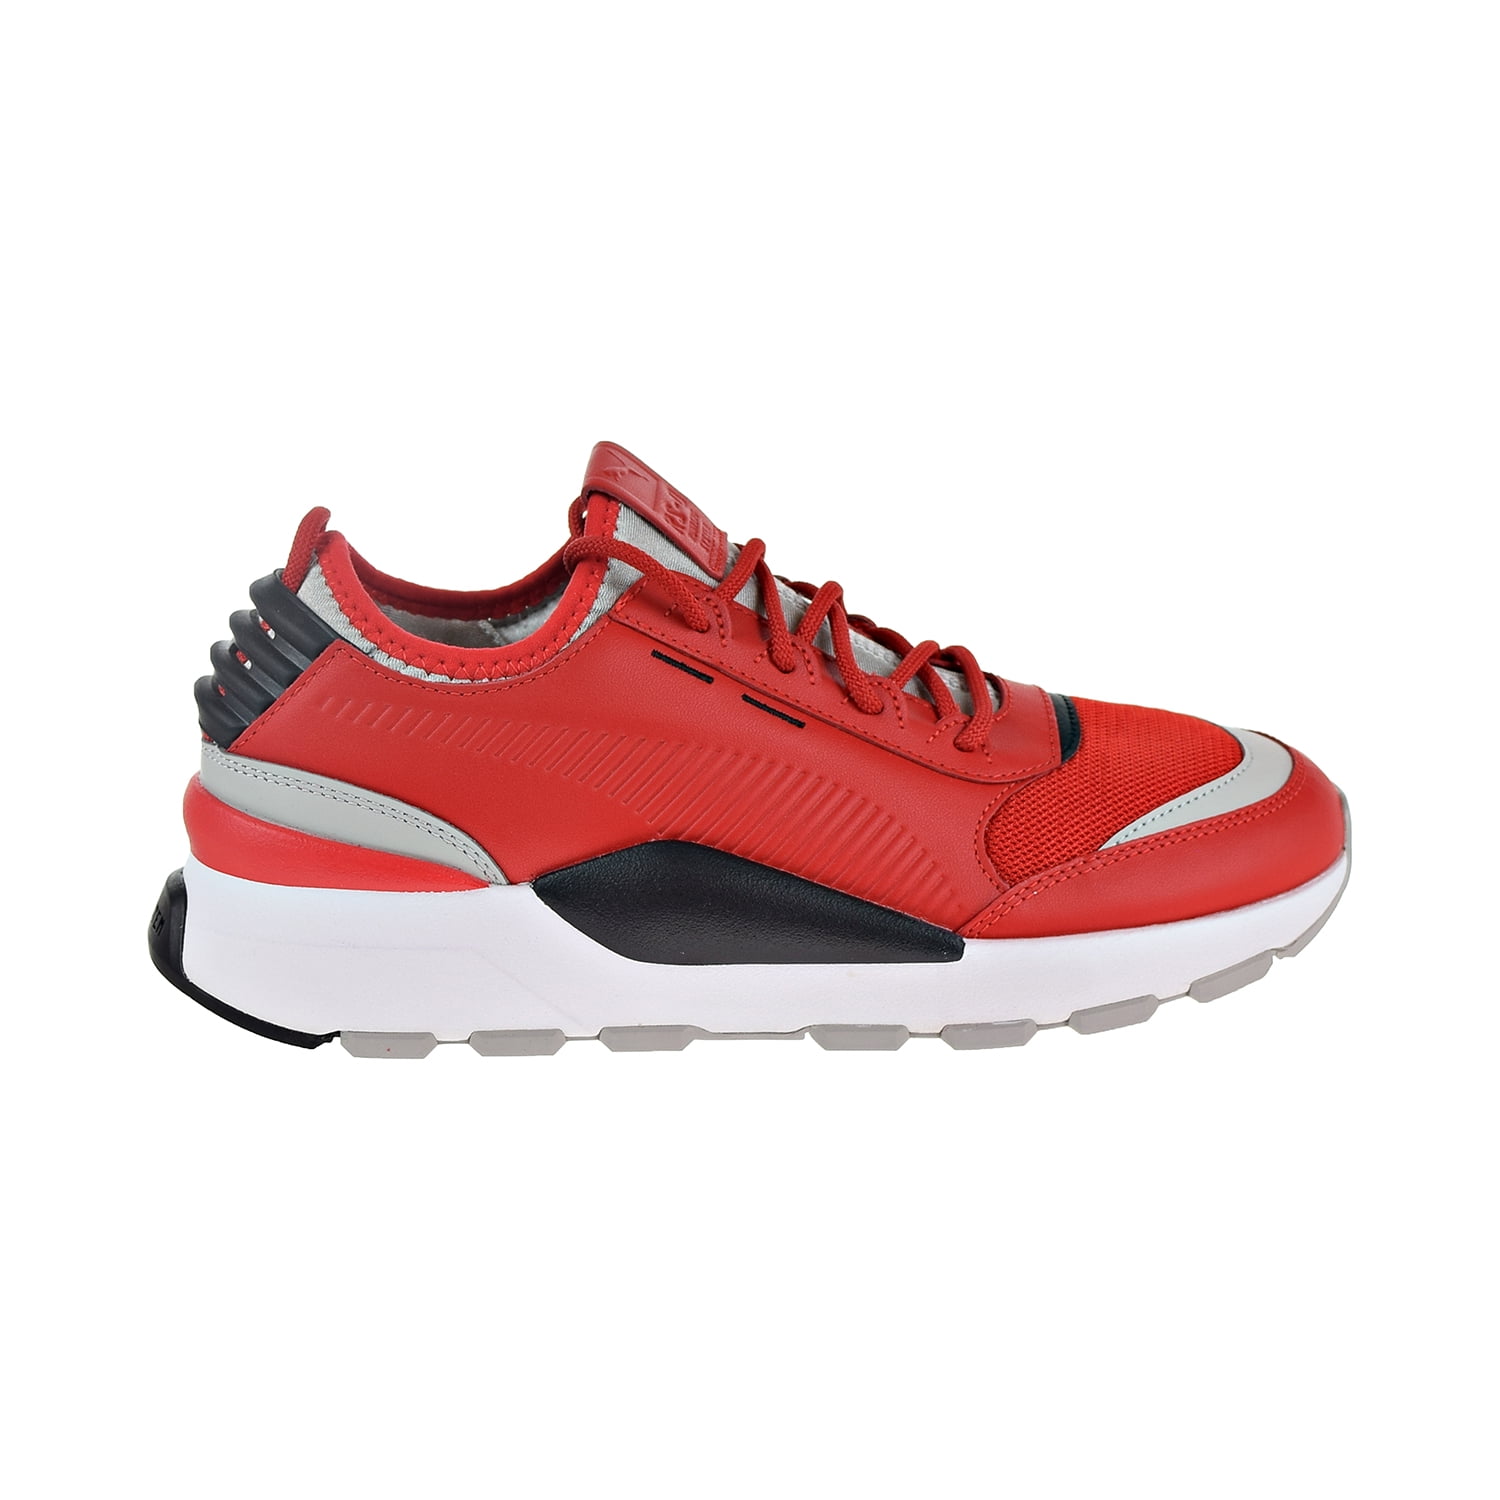 Inaccesible sustracción Catarata Puma RS-0 Sound Men's Shoes High Risk Red/Grey/Violet/Black 366890-03 -  Walmart.com